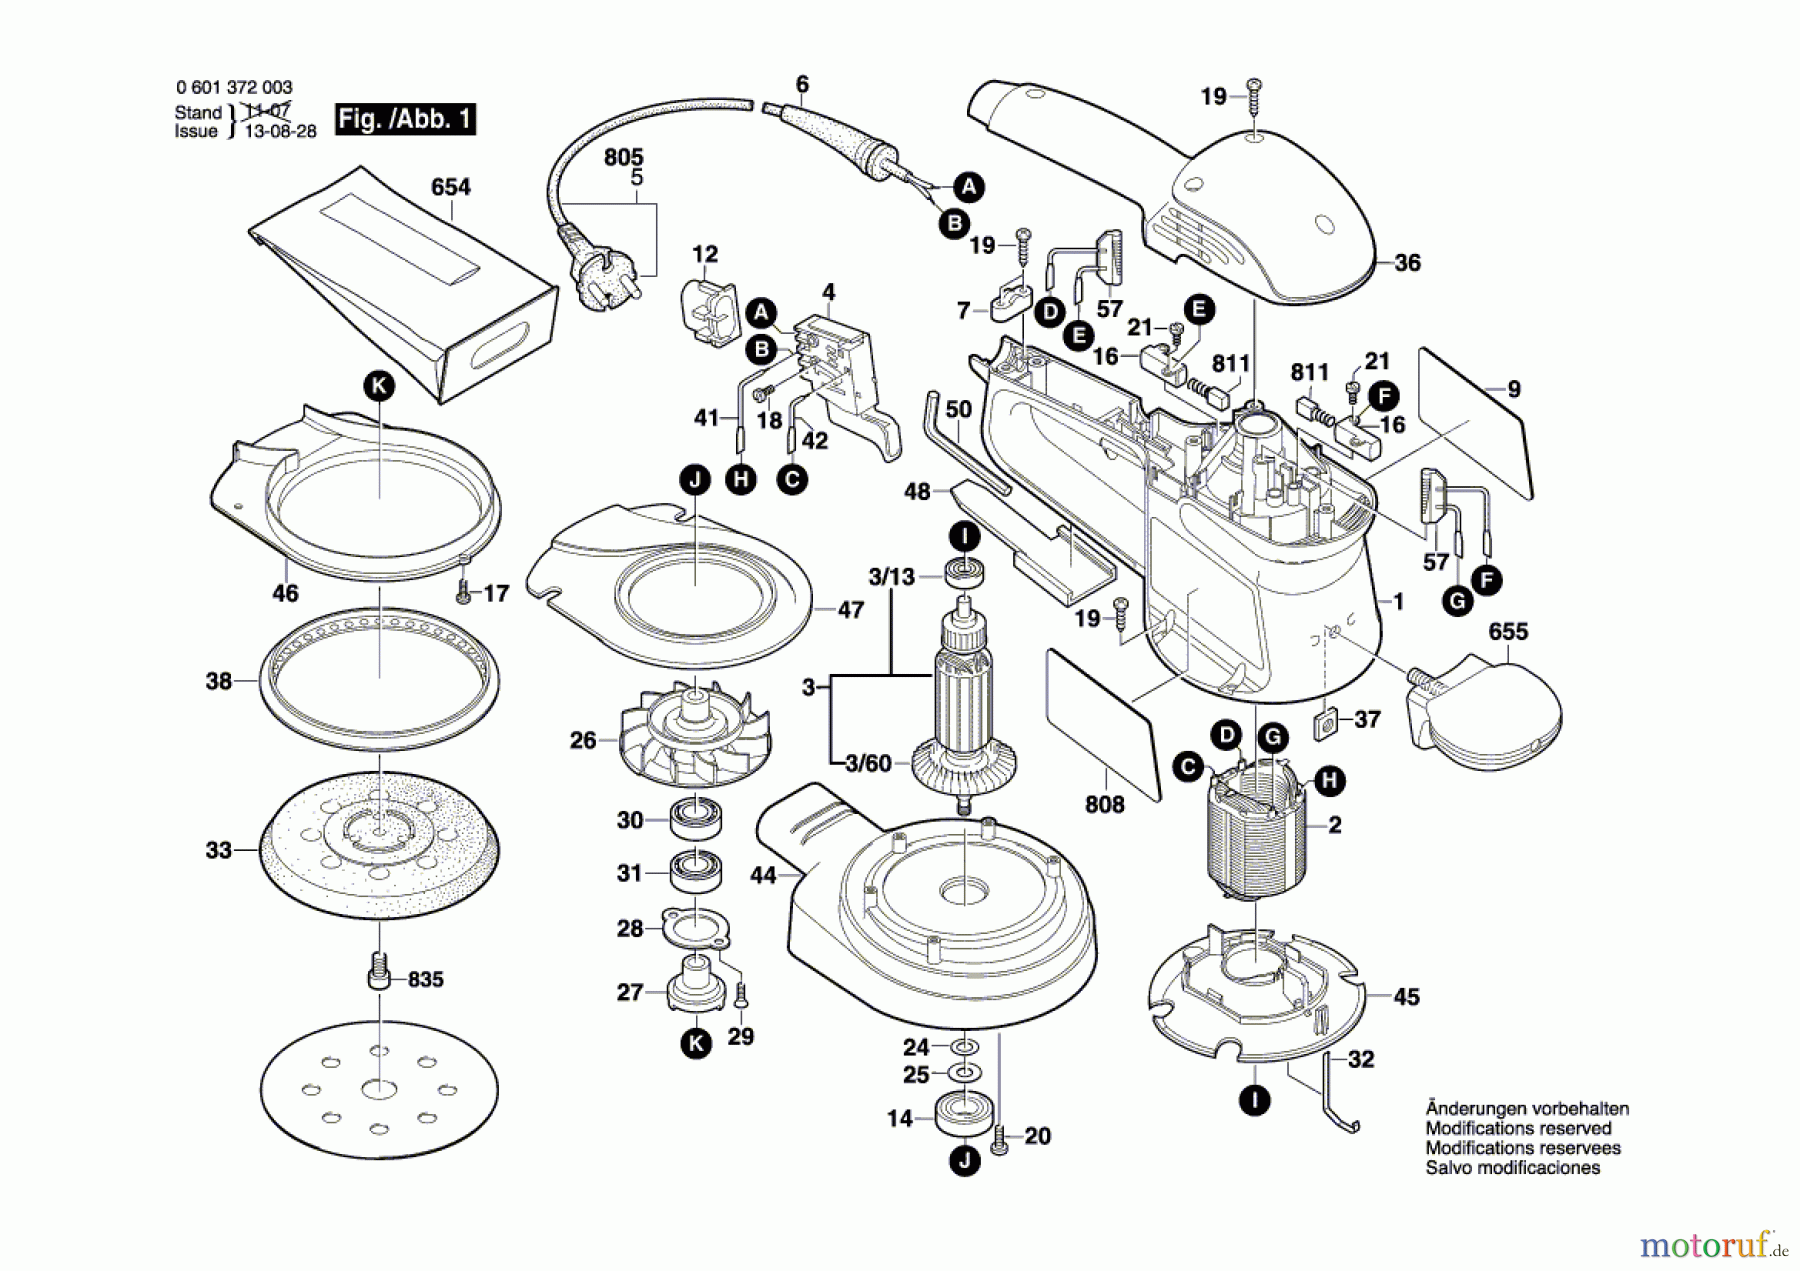  Bosch Werkzeug Exzenterschleifer GEX 125 A Seite 1